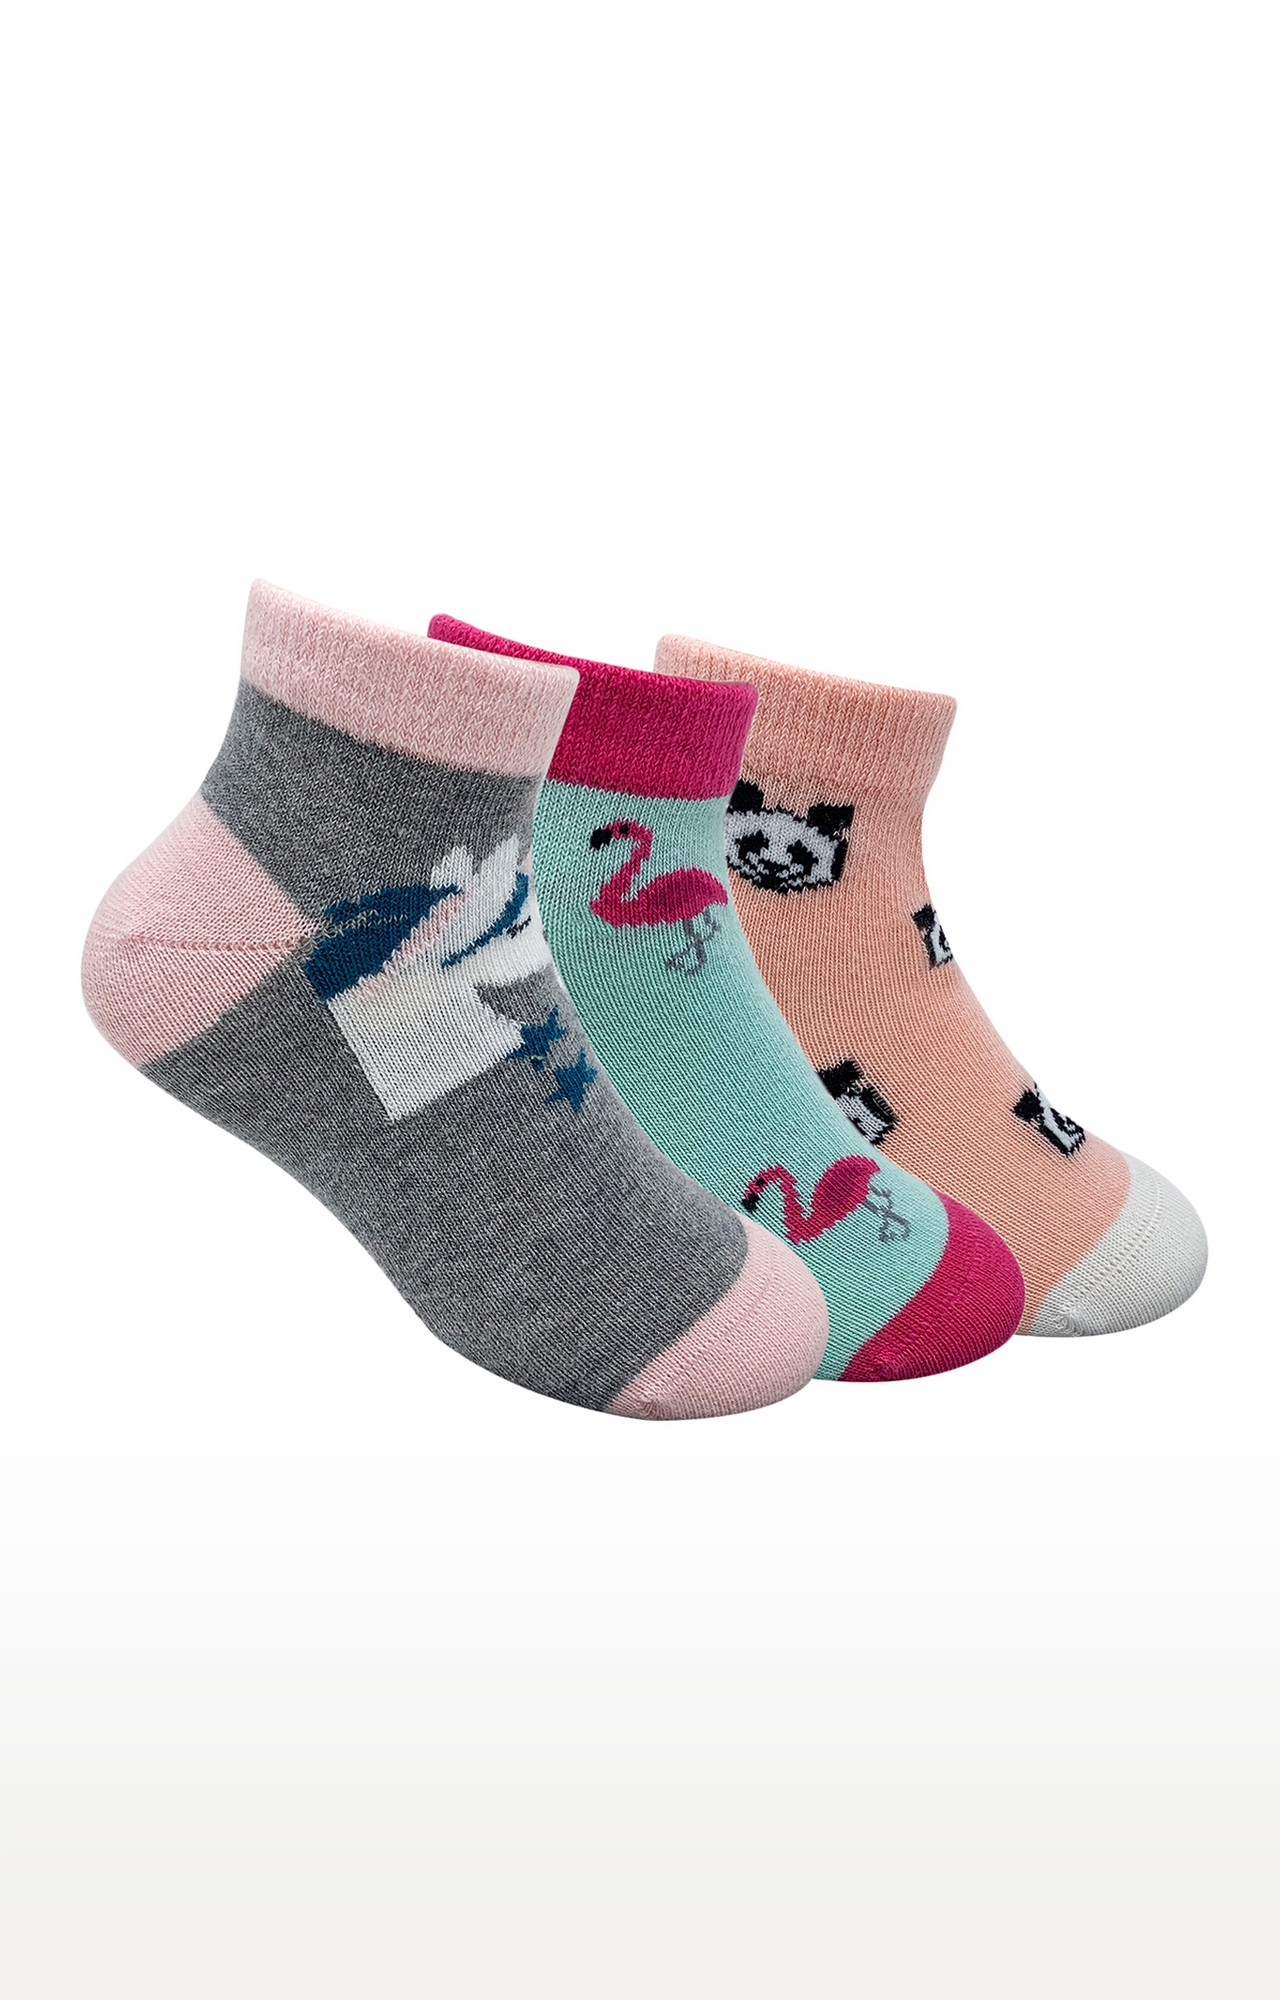 Mint & Oak Magical Feeling Cotton Multi Ankle Length Socks for Kids - Pack of 3